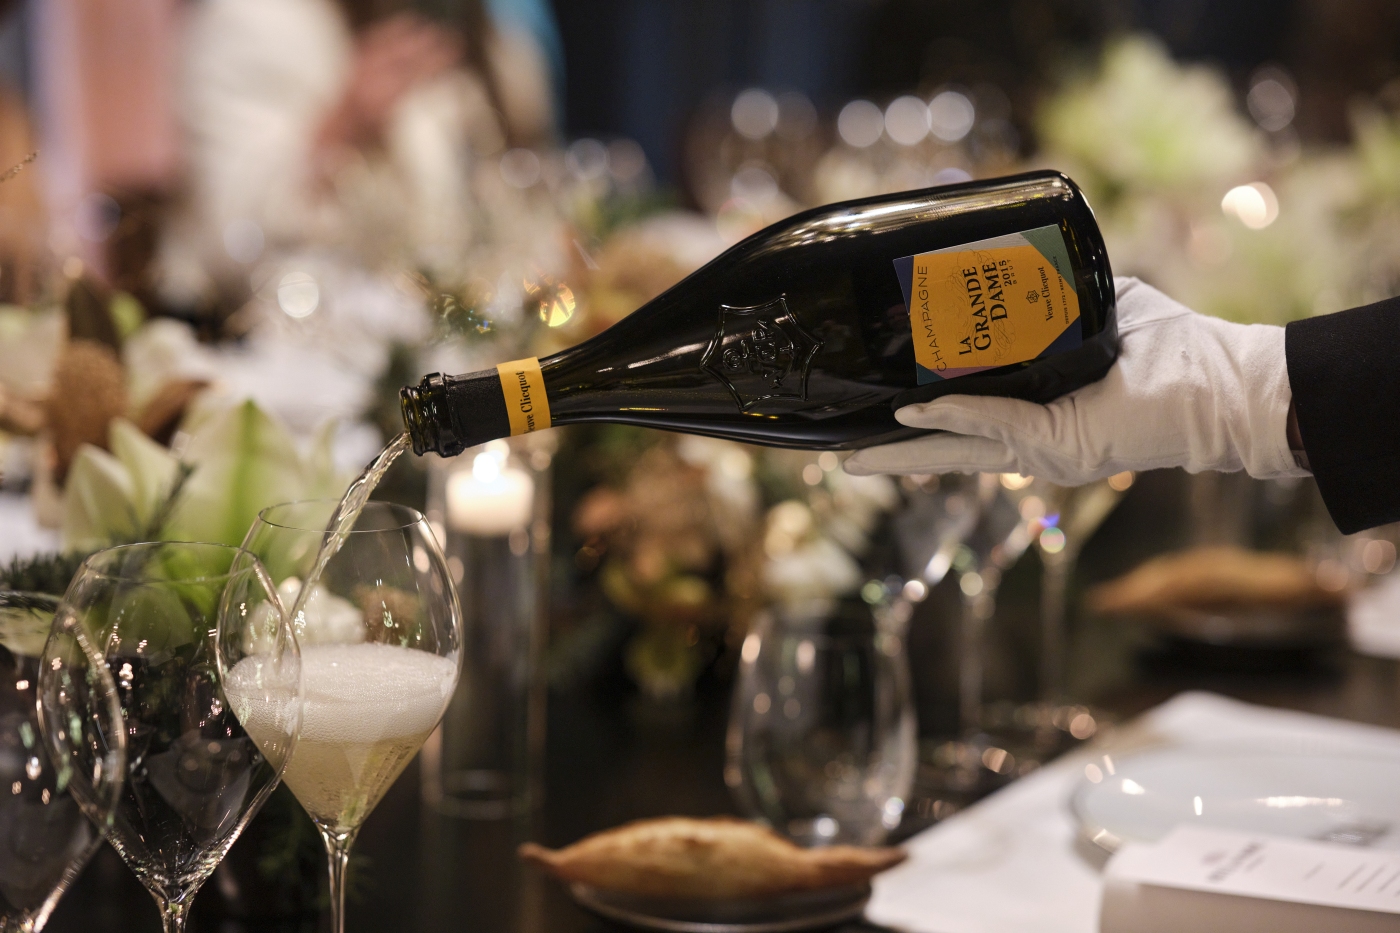 Hrvatske chefice sudjeluju u novom programu poznate šampanjske kuće Veuve Clicquot